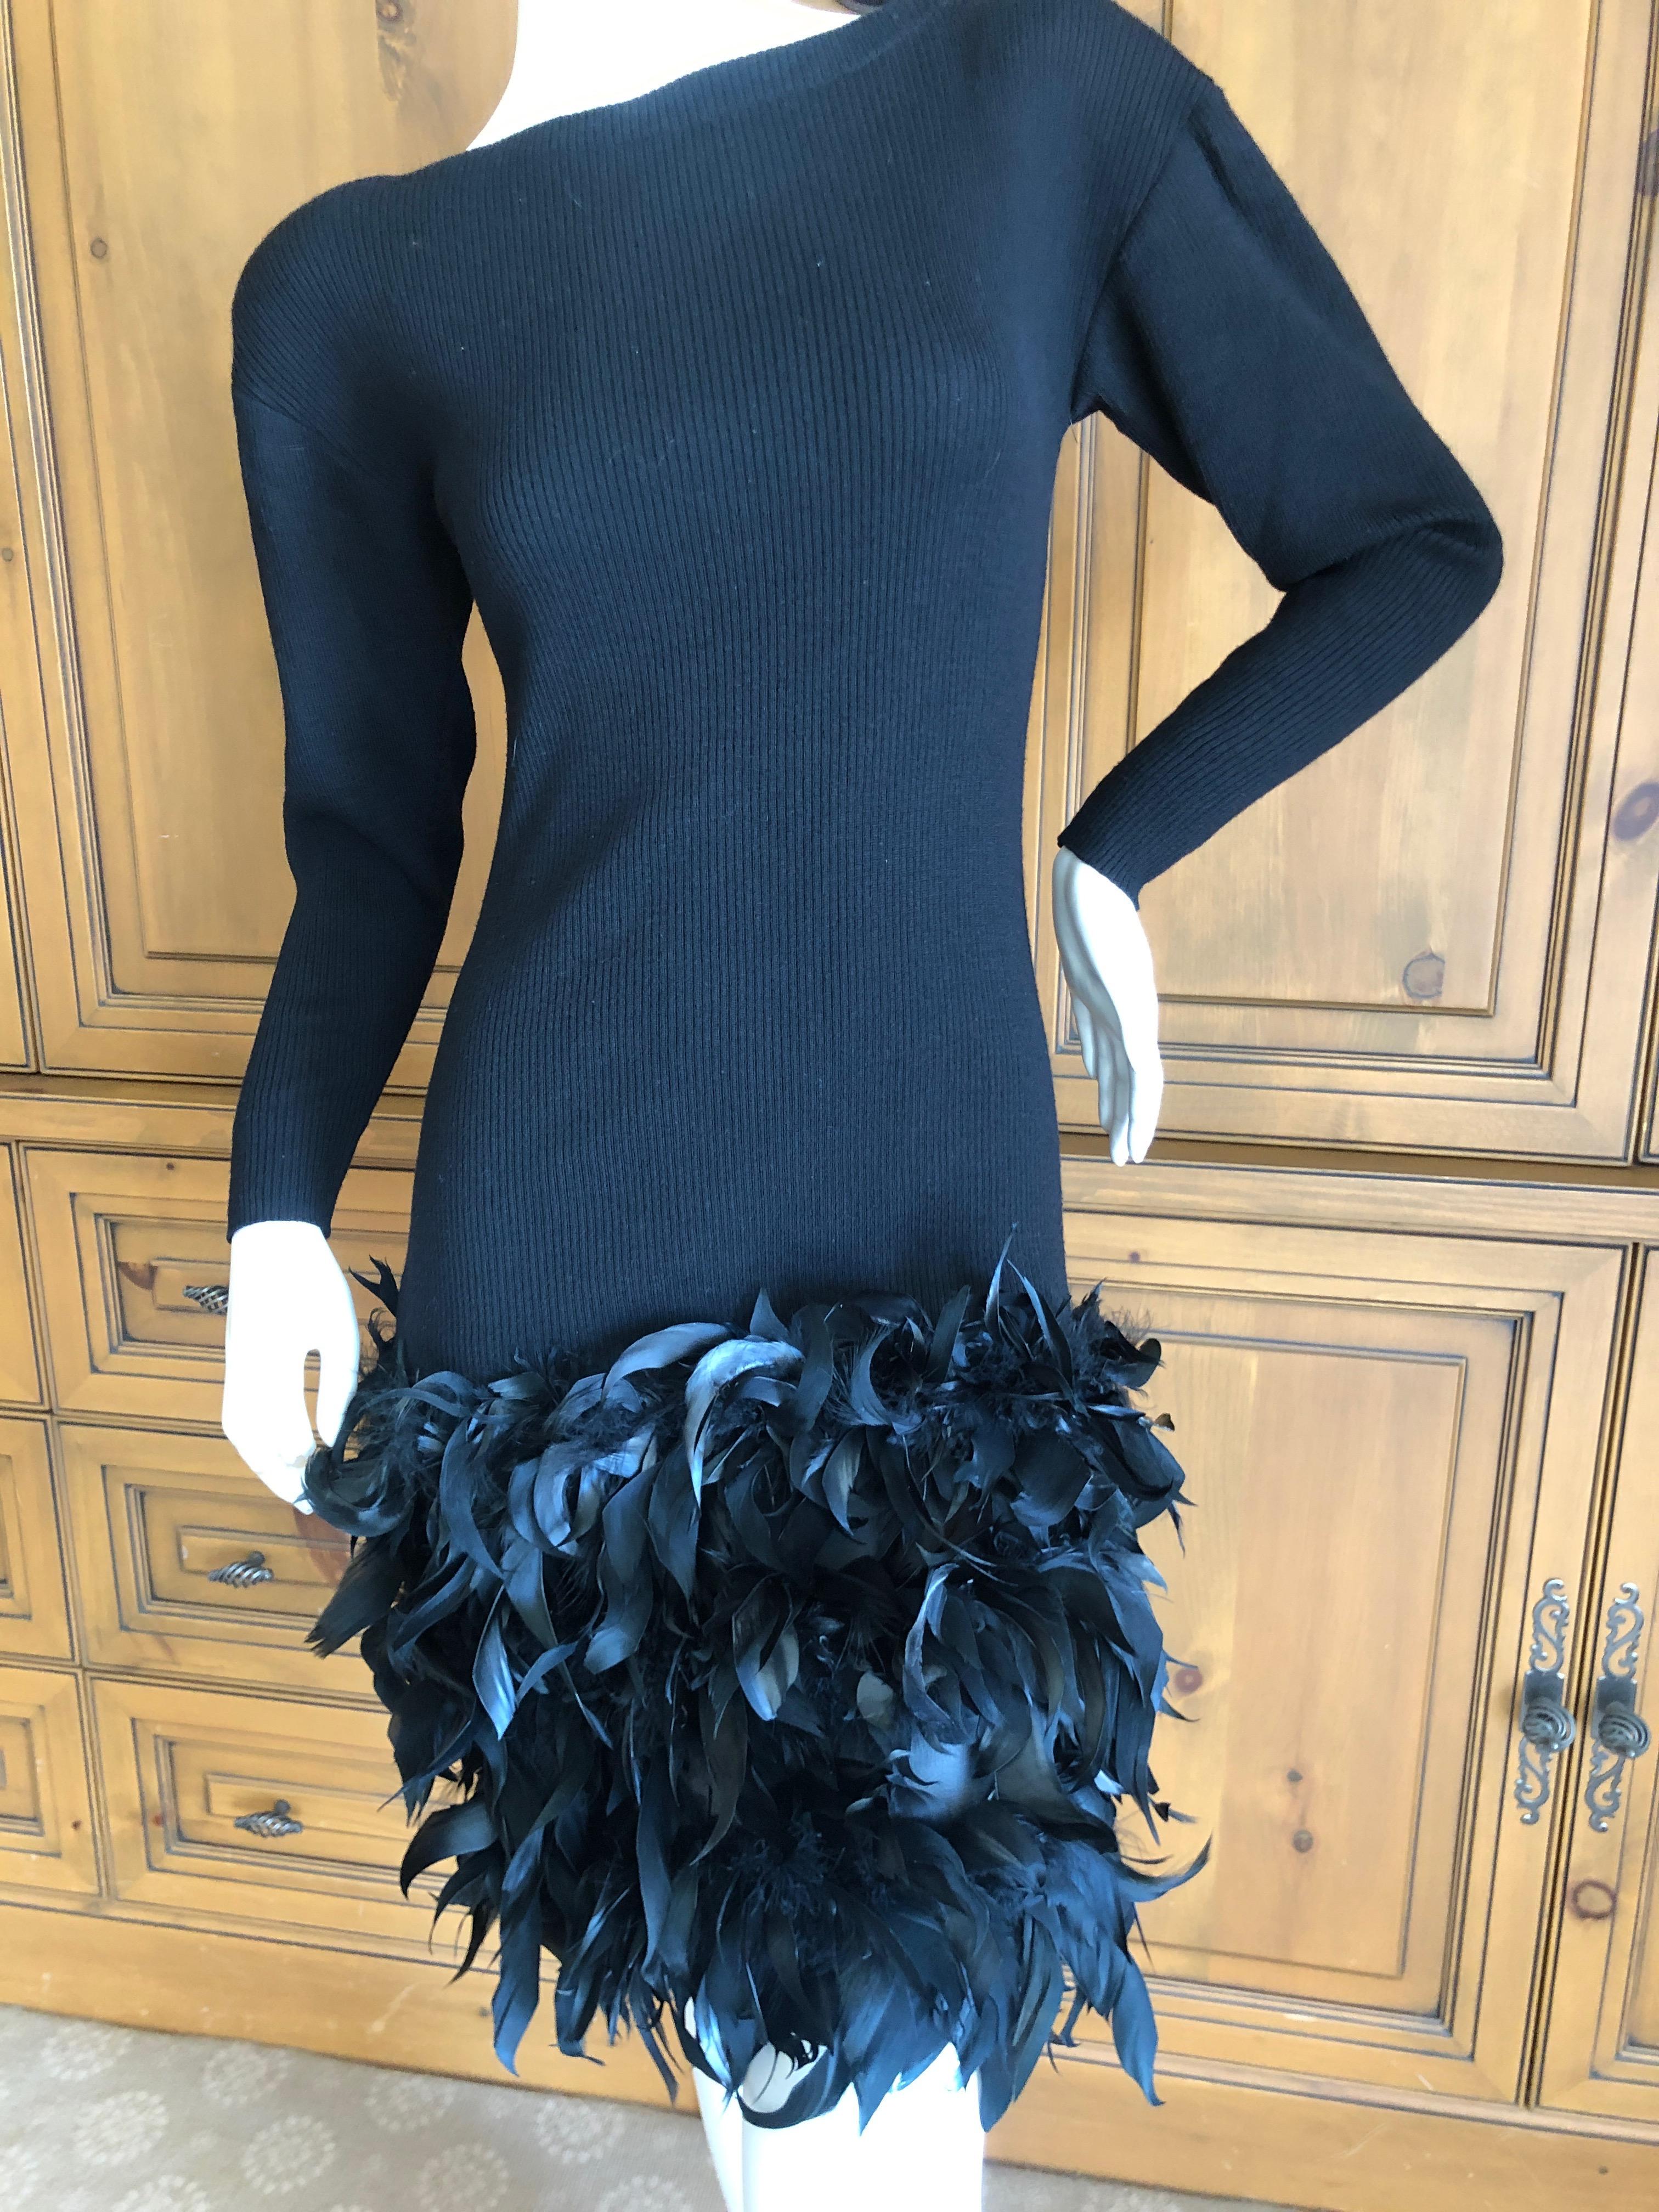 Yves Saint Laurent Rive Gauche Vintage Kleines Schwarzes Kleid mit Federn von Maislon Lamarie auf dem Rock.
Das Kleid ist aus Wolle gestrickt, sehr dehnbar und hat Schulterpads, die entfernt werden können.
Markierte Größe 34
Büste 32